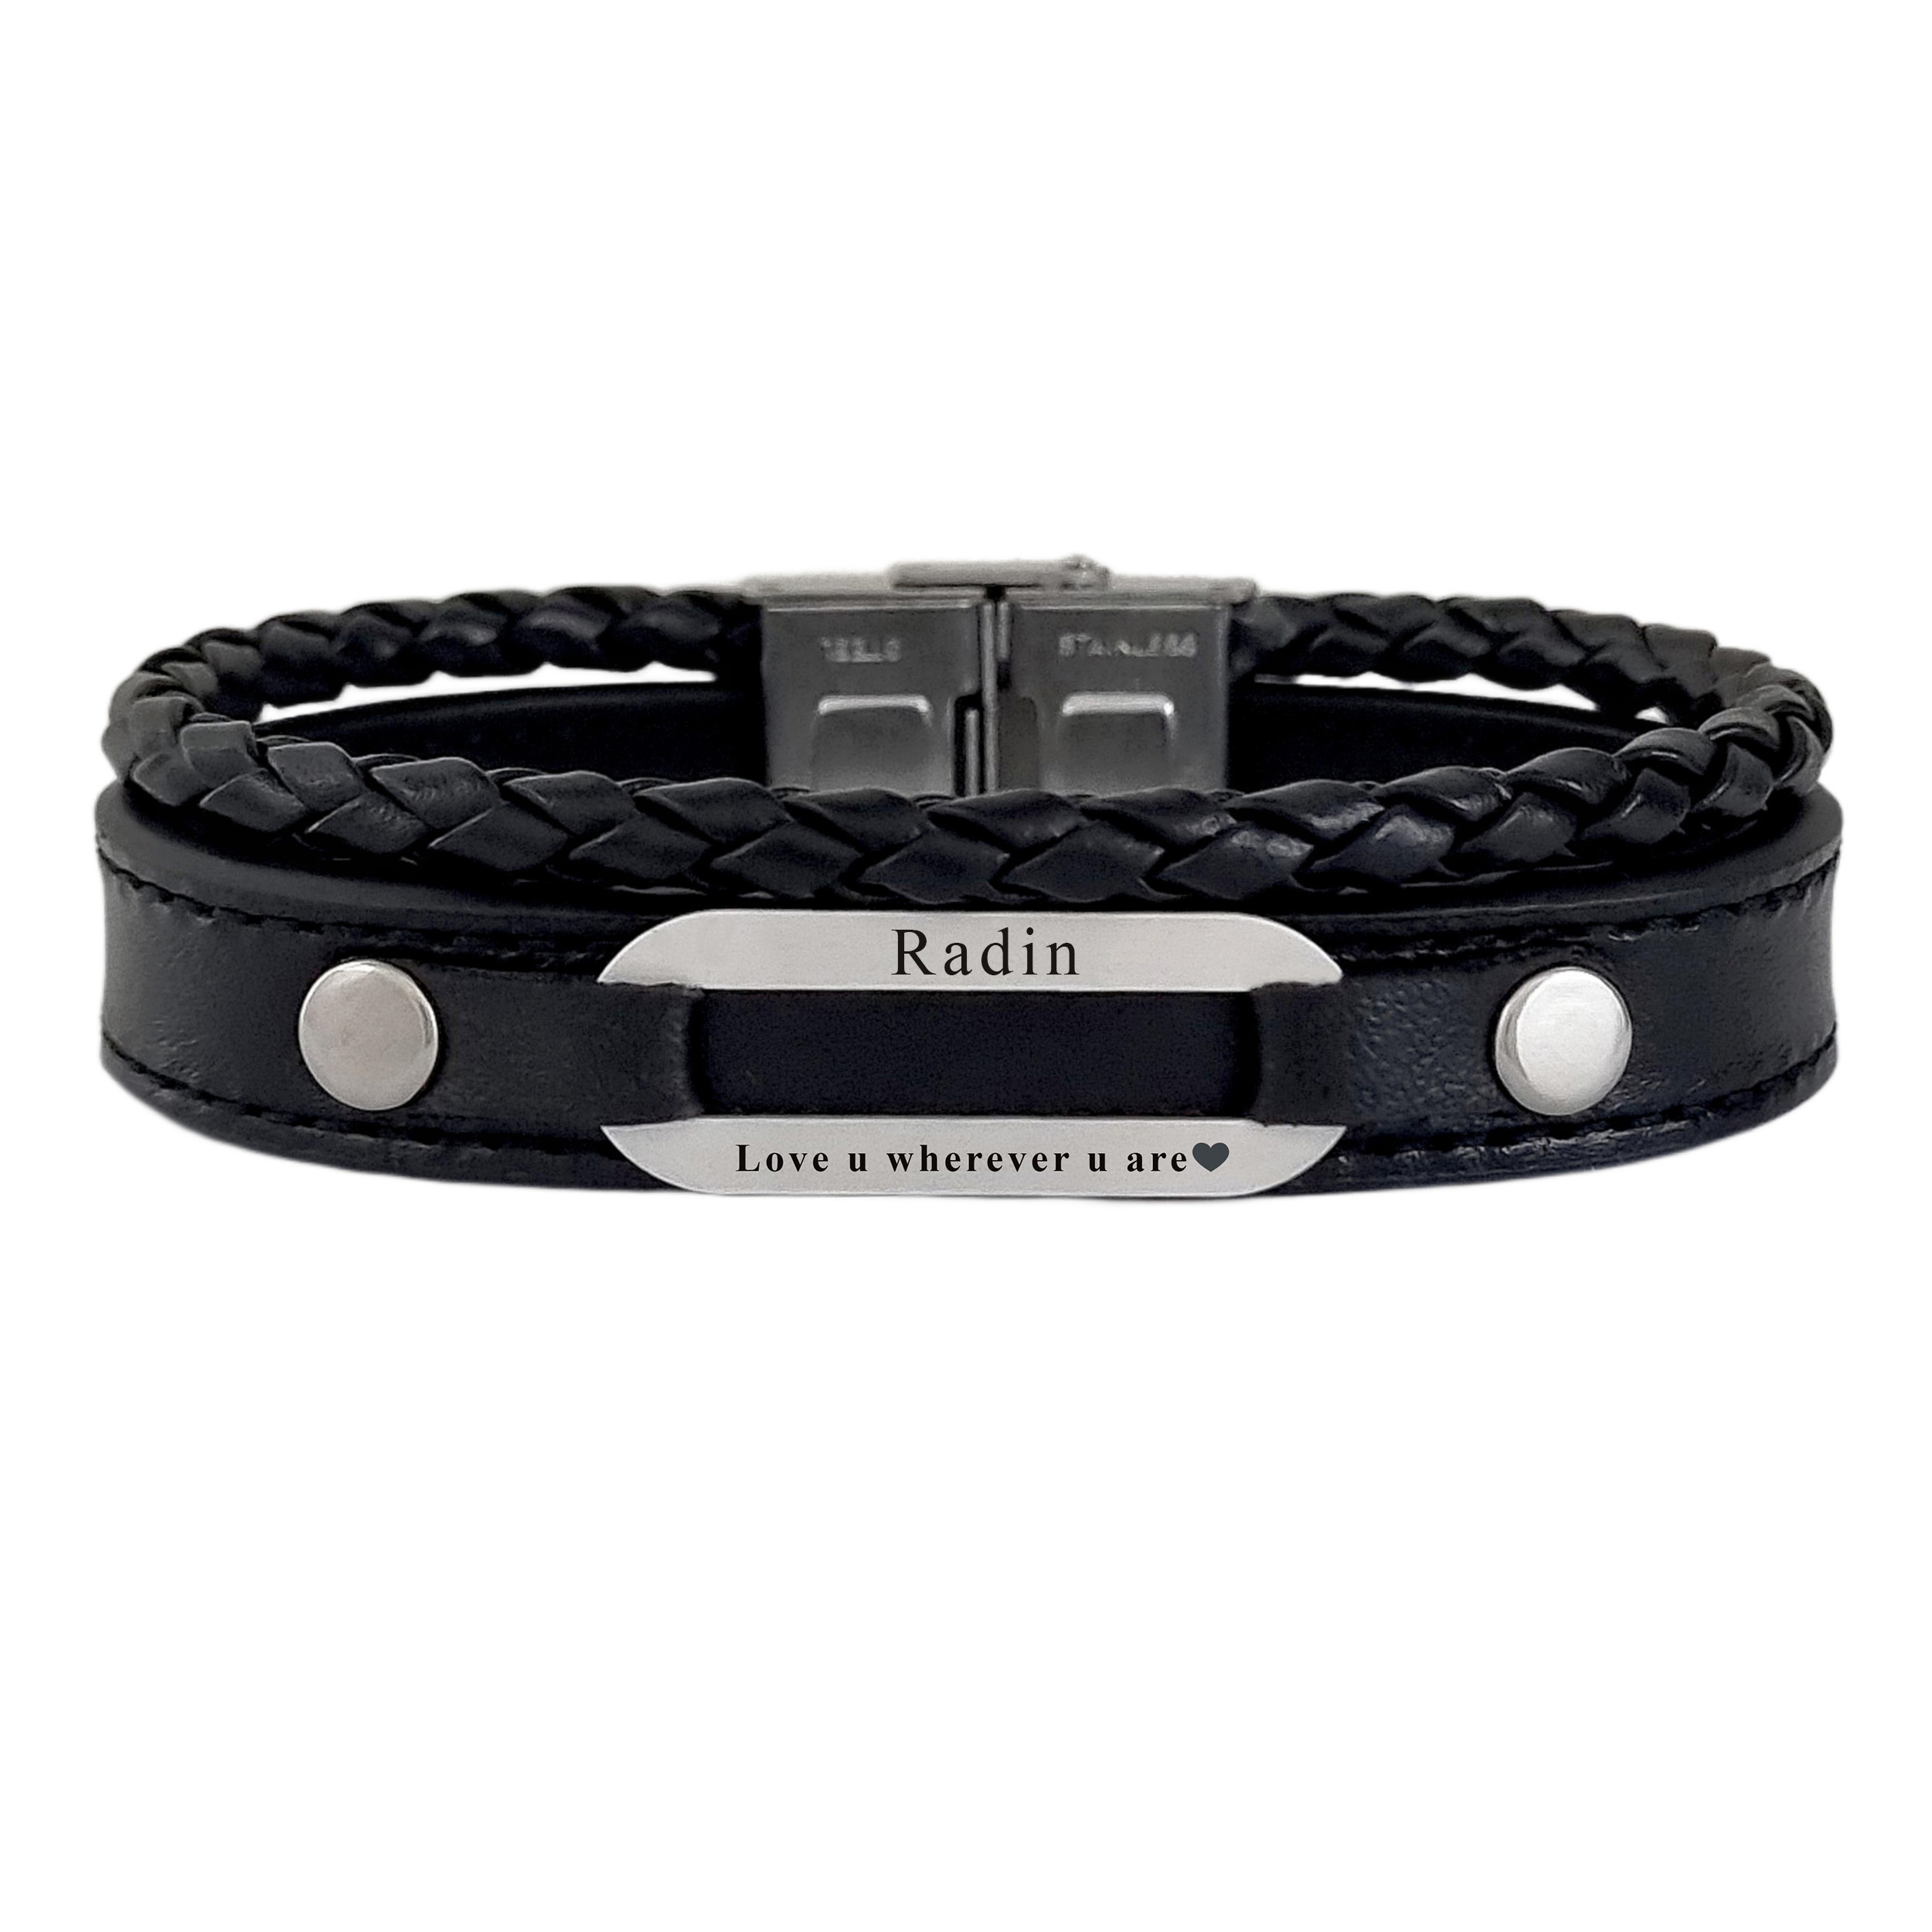 دستبند نقره مردانه لیردا مدل اسم رادین 72500